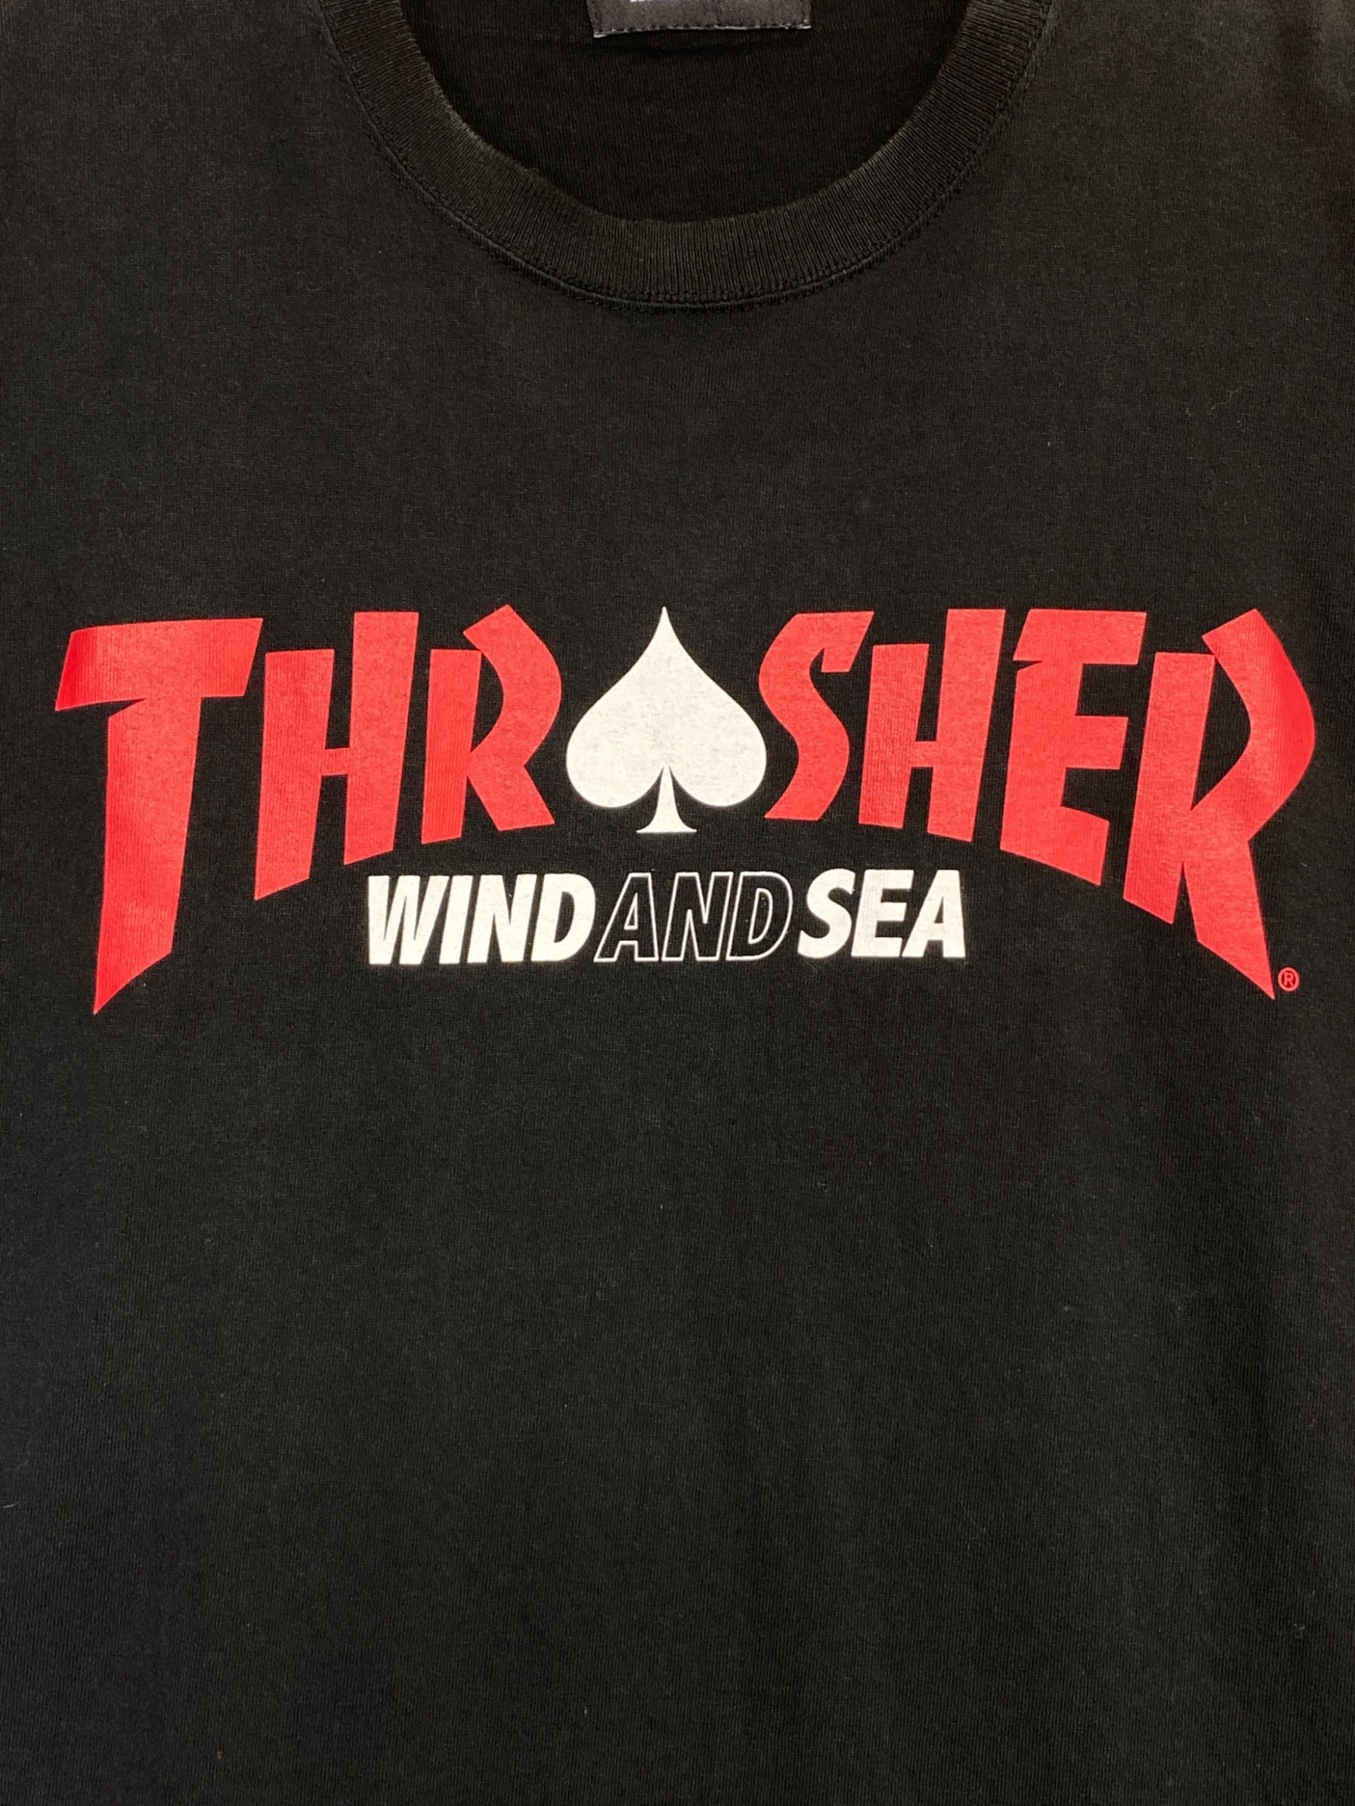 WIND AND SEA (ウィンダンシー) THRASHER (スラッシャー) コットン クルーネック 半袖ロゴTシャツ ブラック×レッド サイズ:L